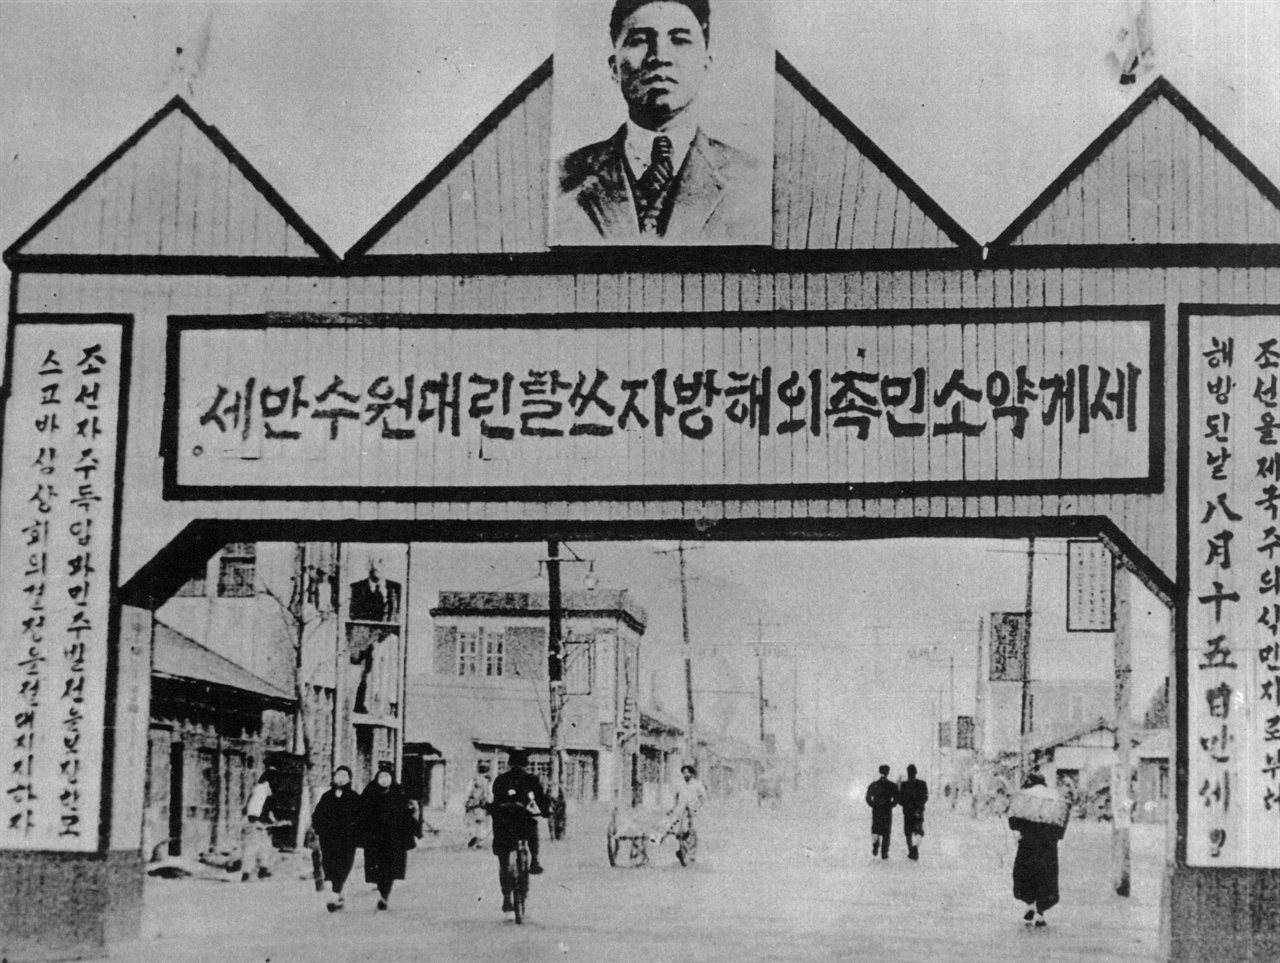  날짜 미상 평양. 북한의 해방경축 아치로 “세계 약소민족의 해방자 스탈린 대원수 만세”라는 구호를 게시하고 있었다.